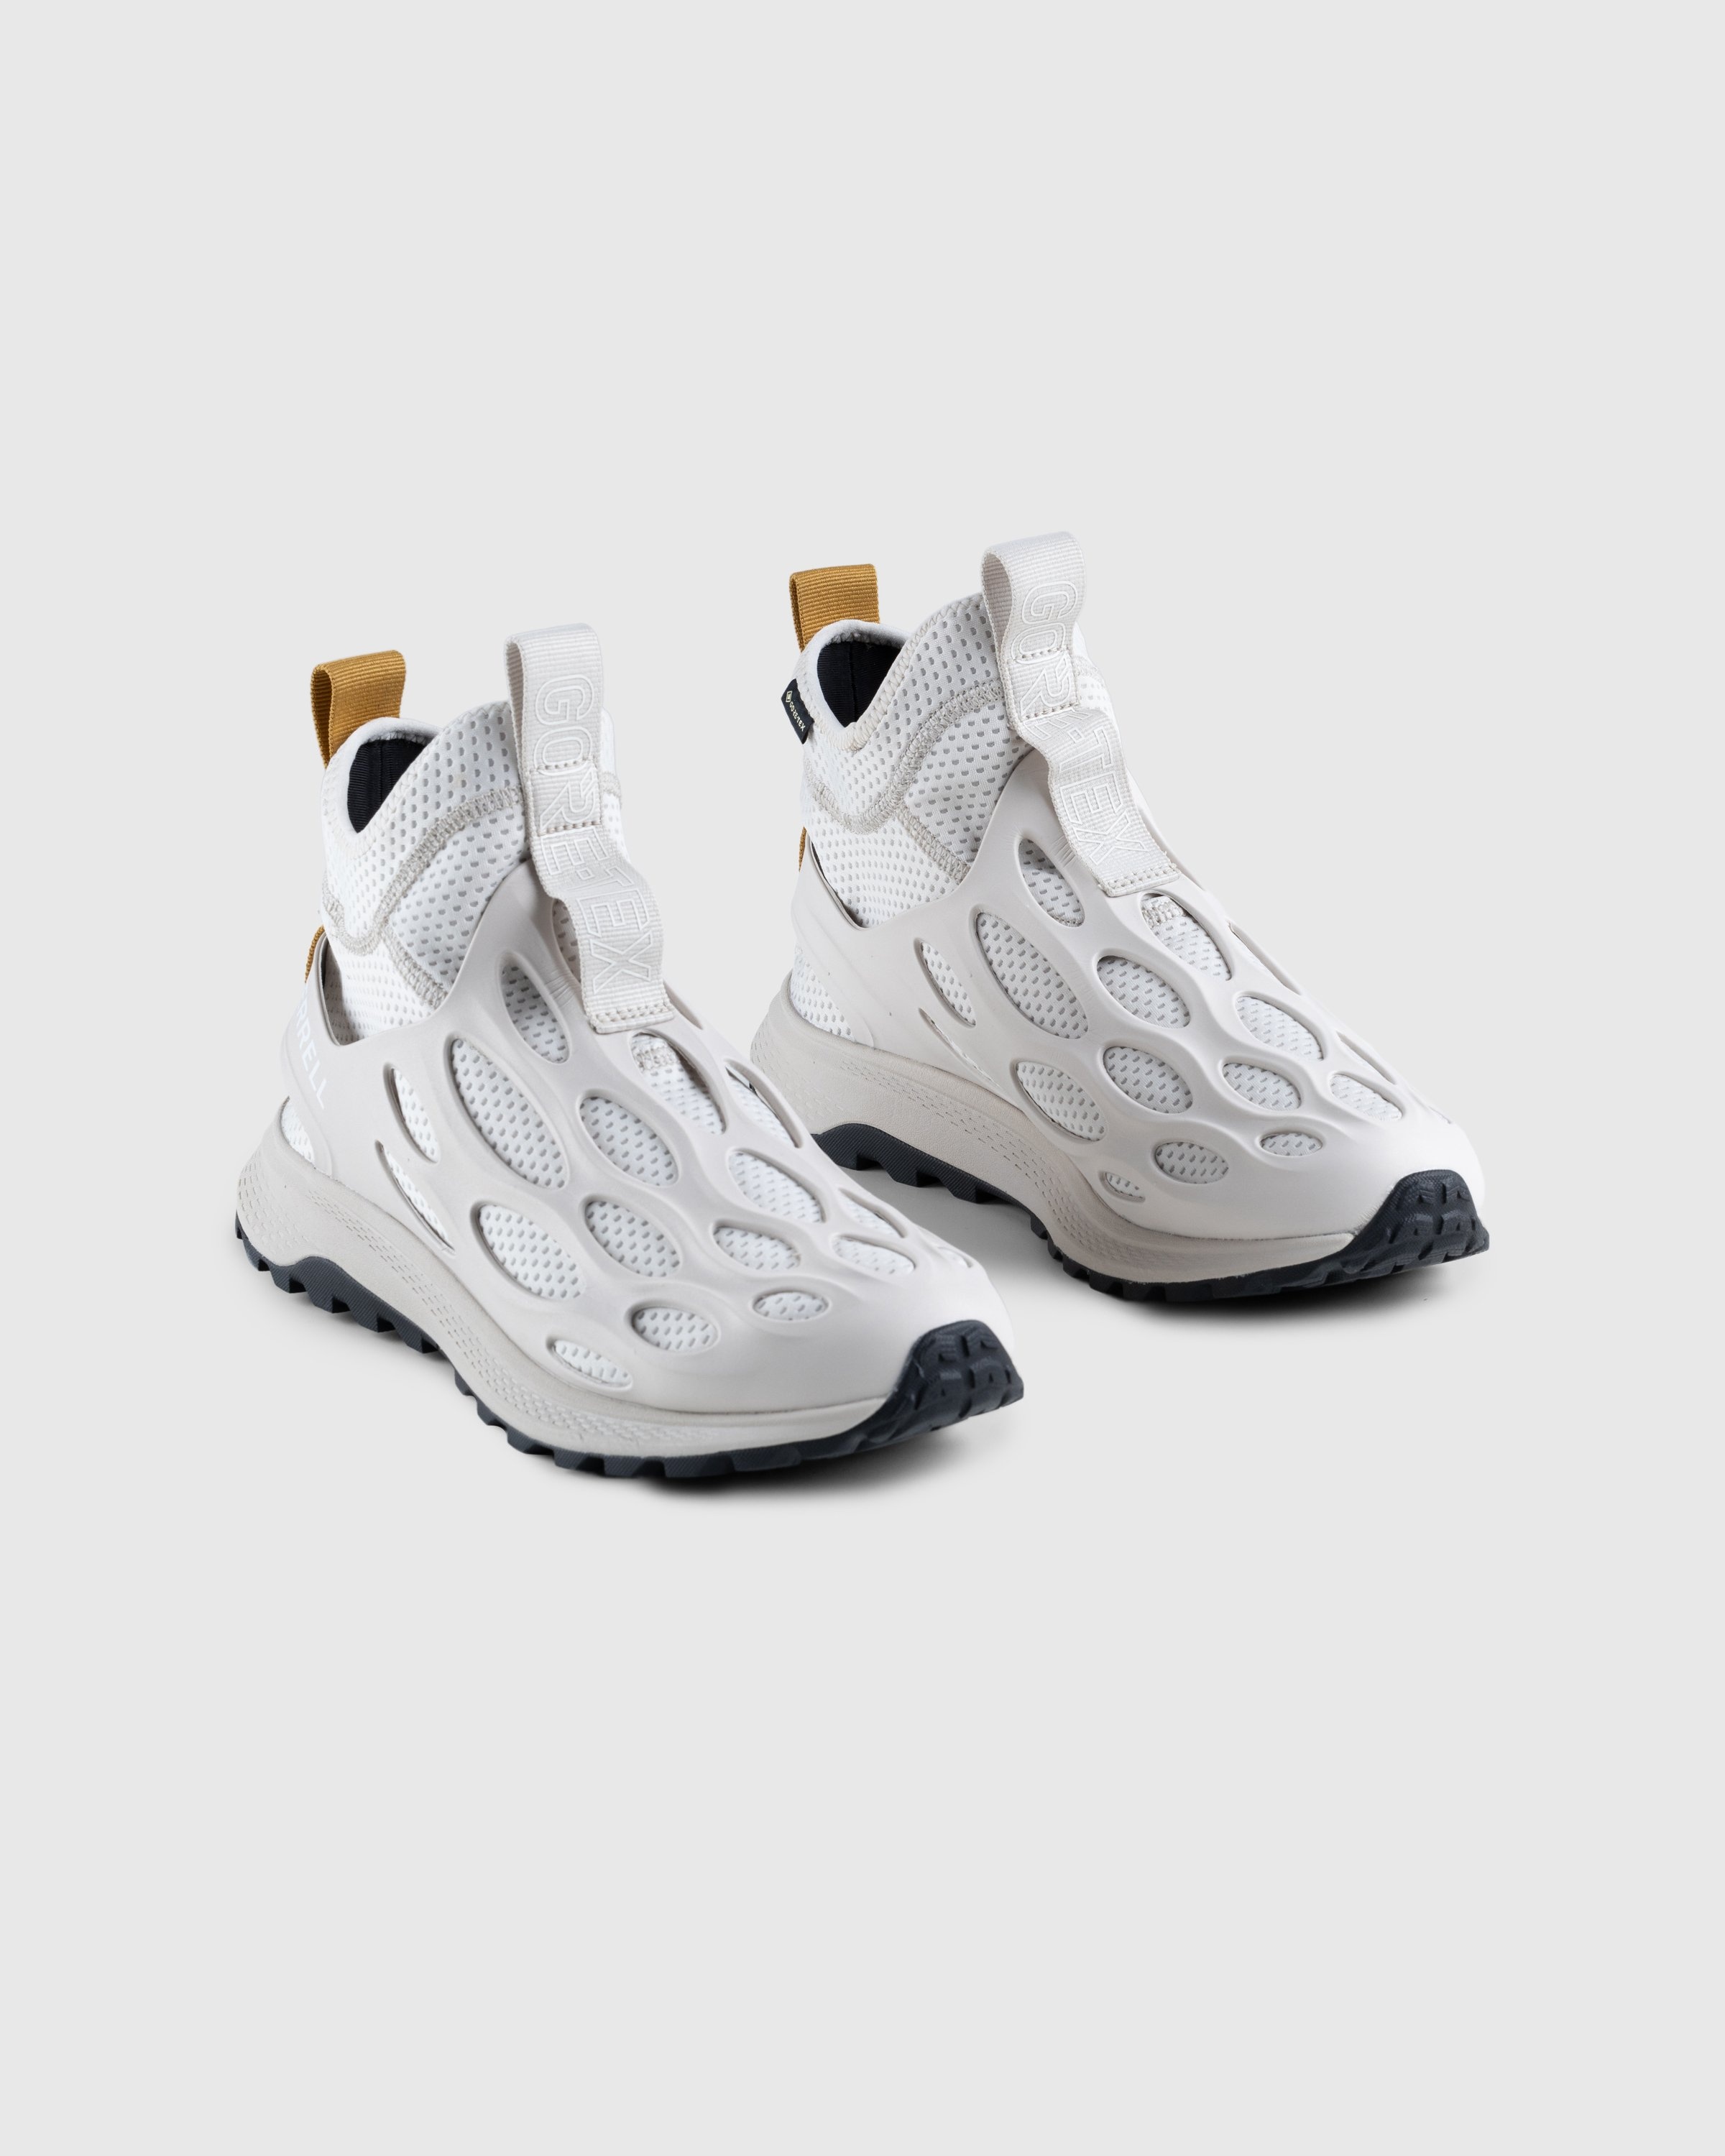 Merrell – Hydro Runner Mid GORE-TEX Moonbeam - Sneakers - Yellow - Image 3